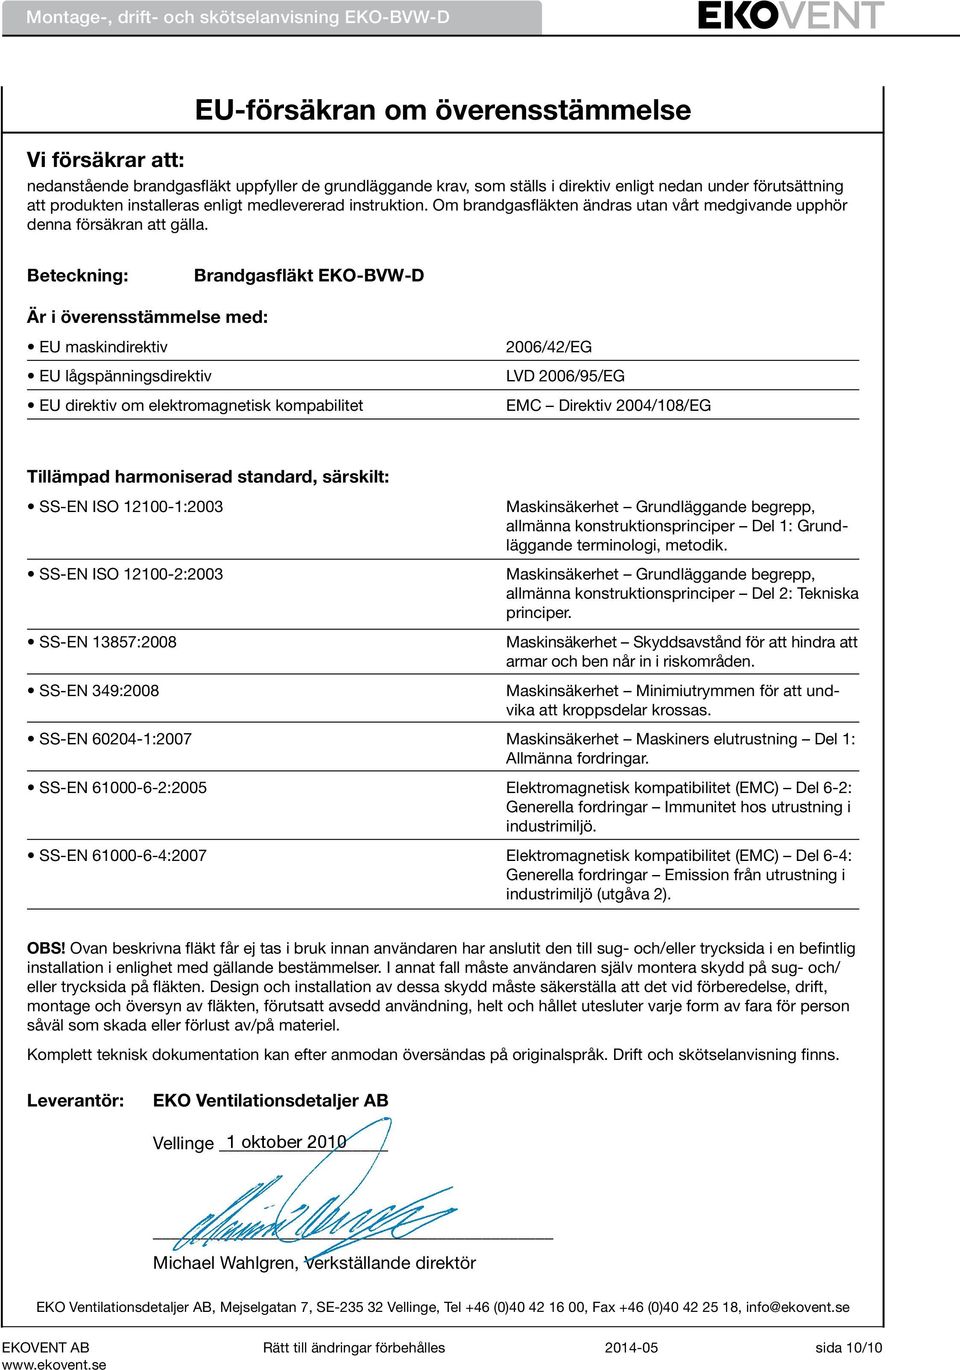 Beteckning: Brandgasfläkt EKO-BVW-D Är i överensstämmelse med: EU maskindirektiv EU lågspänningsdirektiv EU direktiv om elektromagnetisk kompabilitet 2006/42/EG LVD 2006/95/EG EMC Direktiv